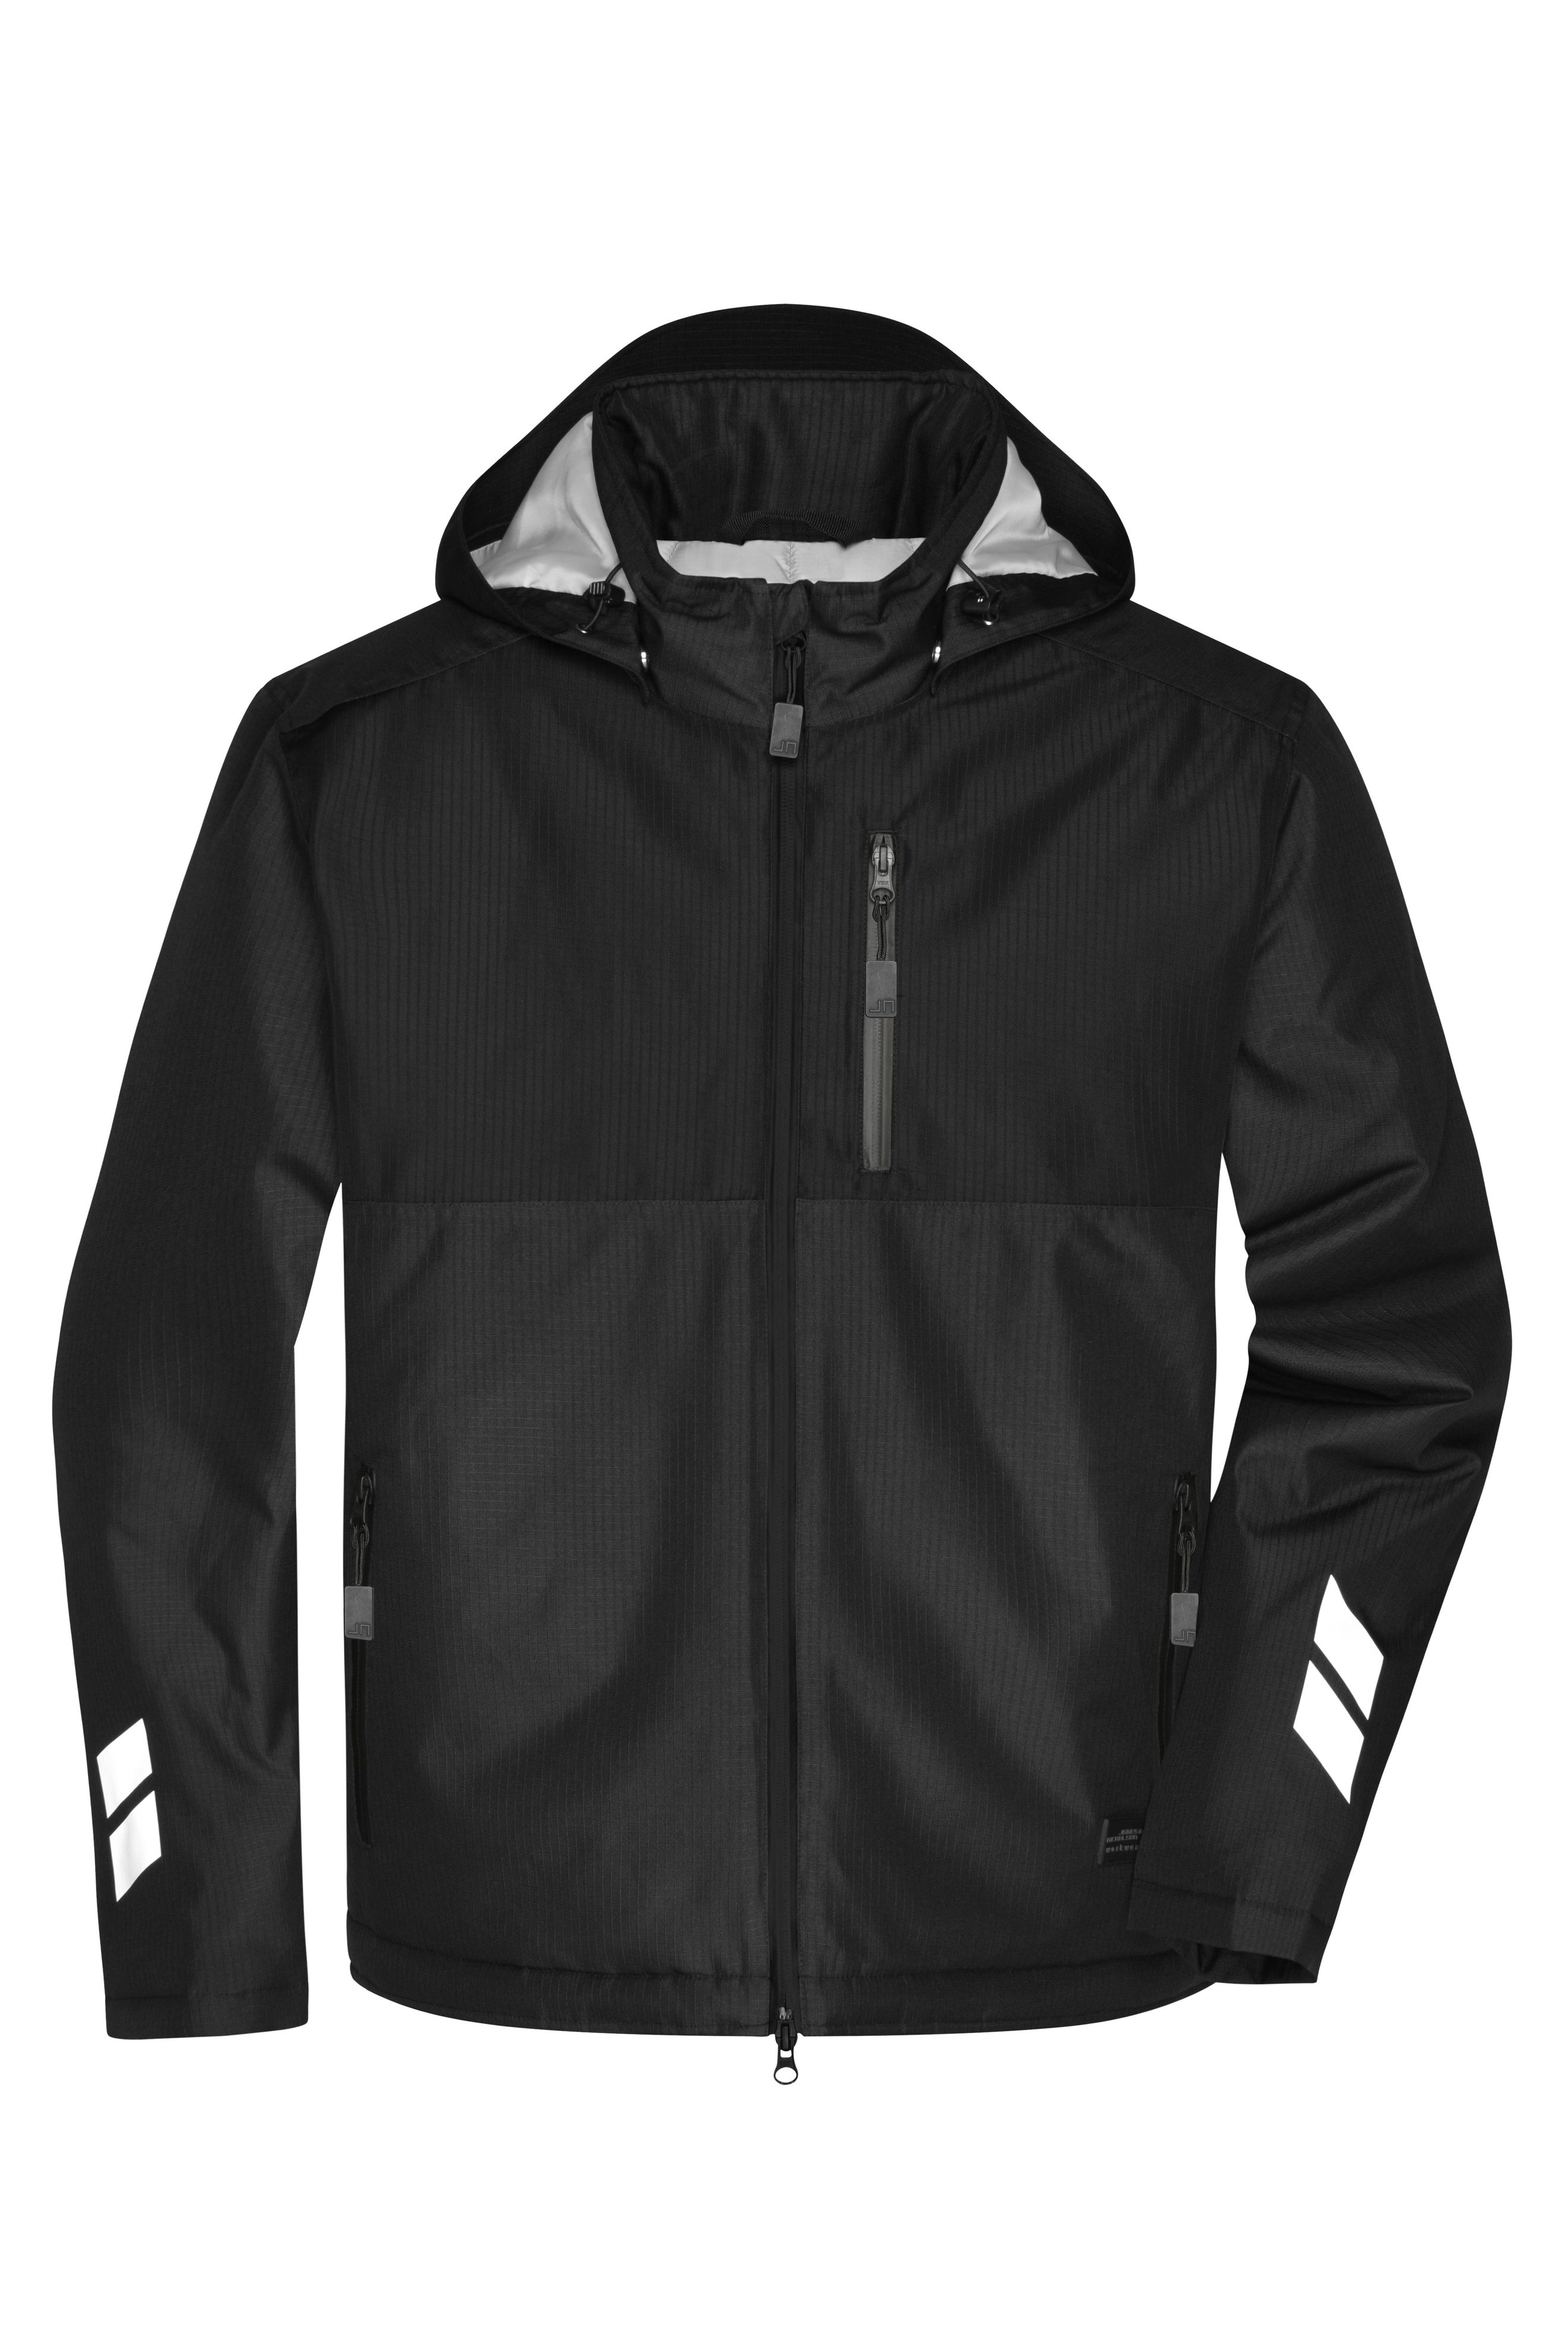 Padded Hardshell Workwear Jacket JN1815 Professionelle, wattierte, wind- und wasserdichte, atmungsaktive Arbeitsjacke für extreme Wetterbedingungen